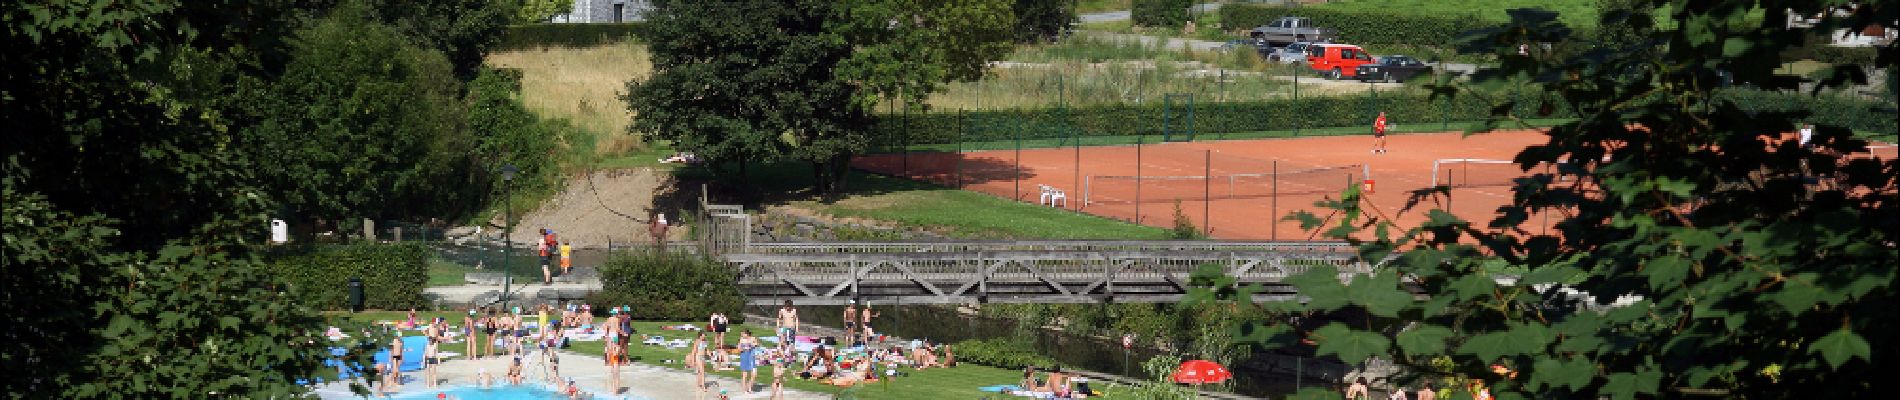 POI Rochefort - Parc des Roches (beschermd park met zwembad, mini-golf, playground, tennis...) - Photo